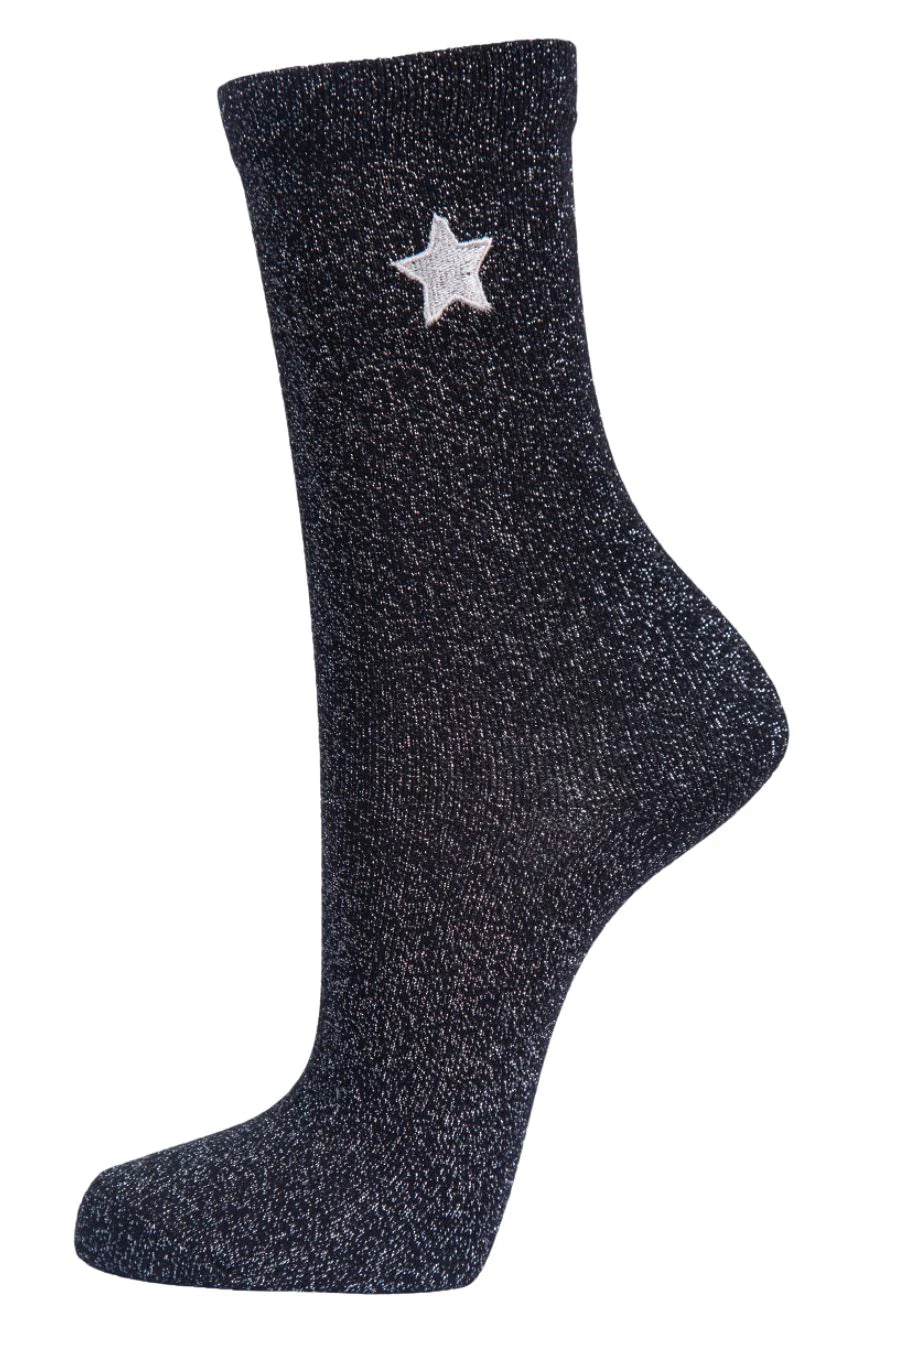 Black Embroidered Star Glitter Socks